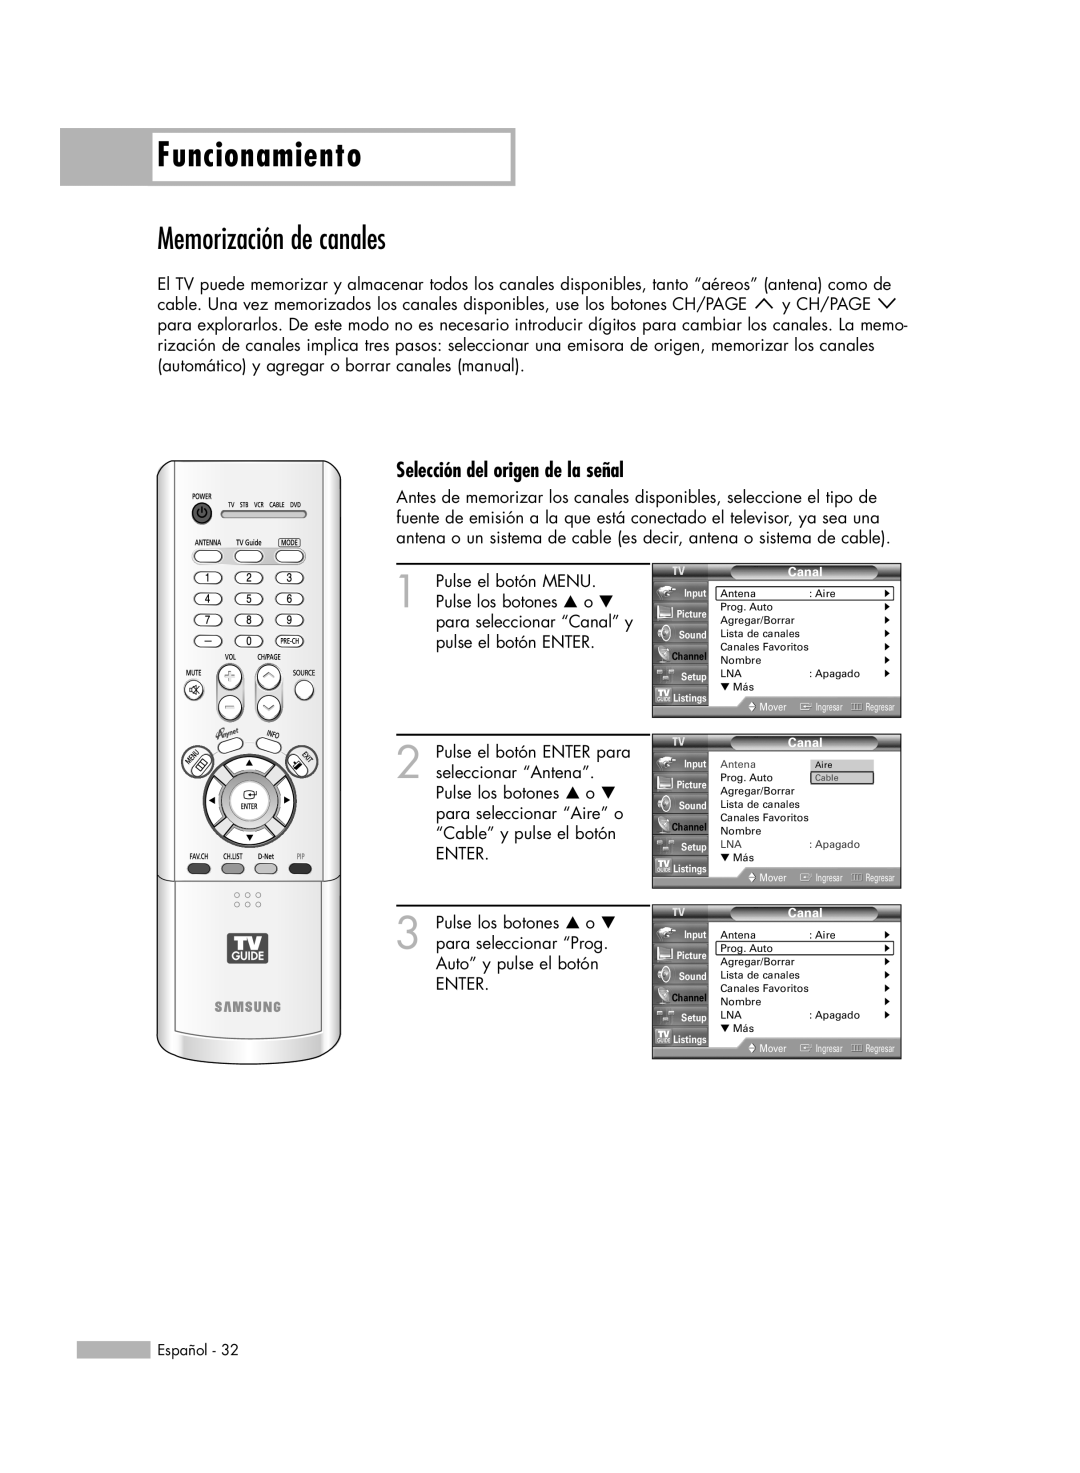 Samsung HL-R6178W, HL-R5078W, HL-R5678W, HL-R7178W Memorización de canales, Selección del origen de la señal, Funcionamiento 